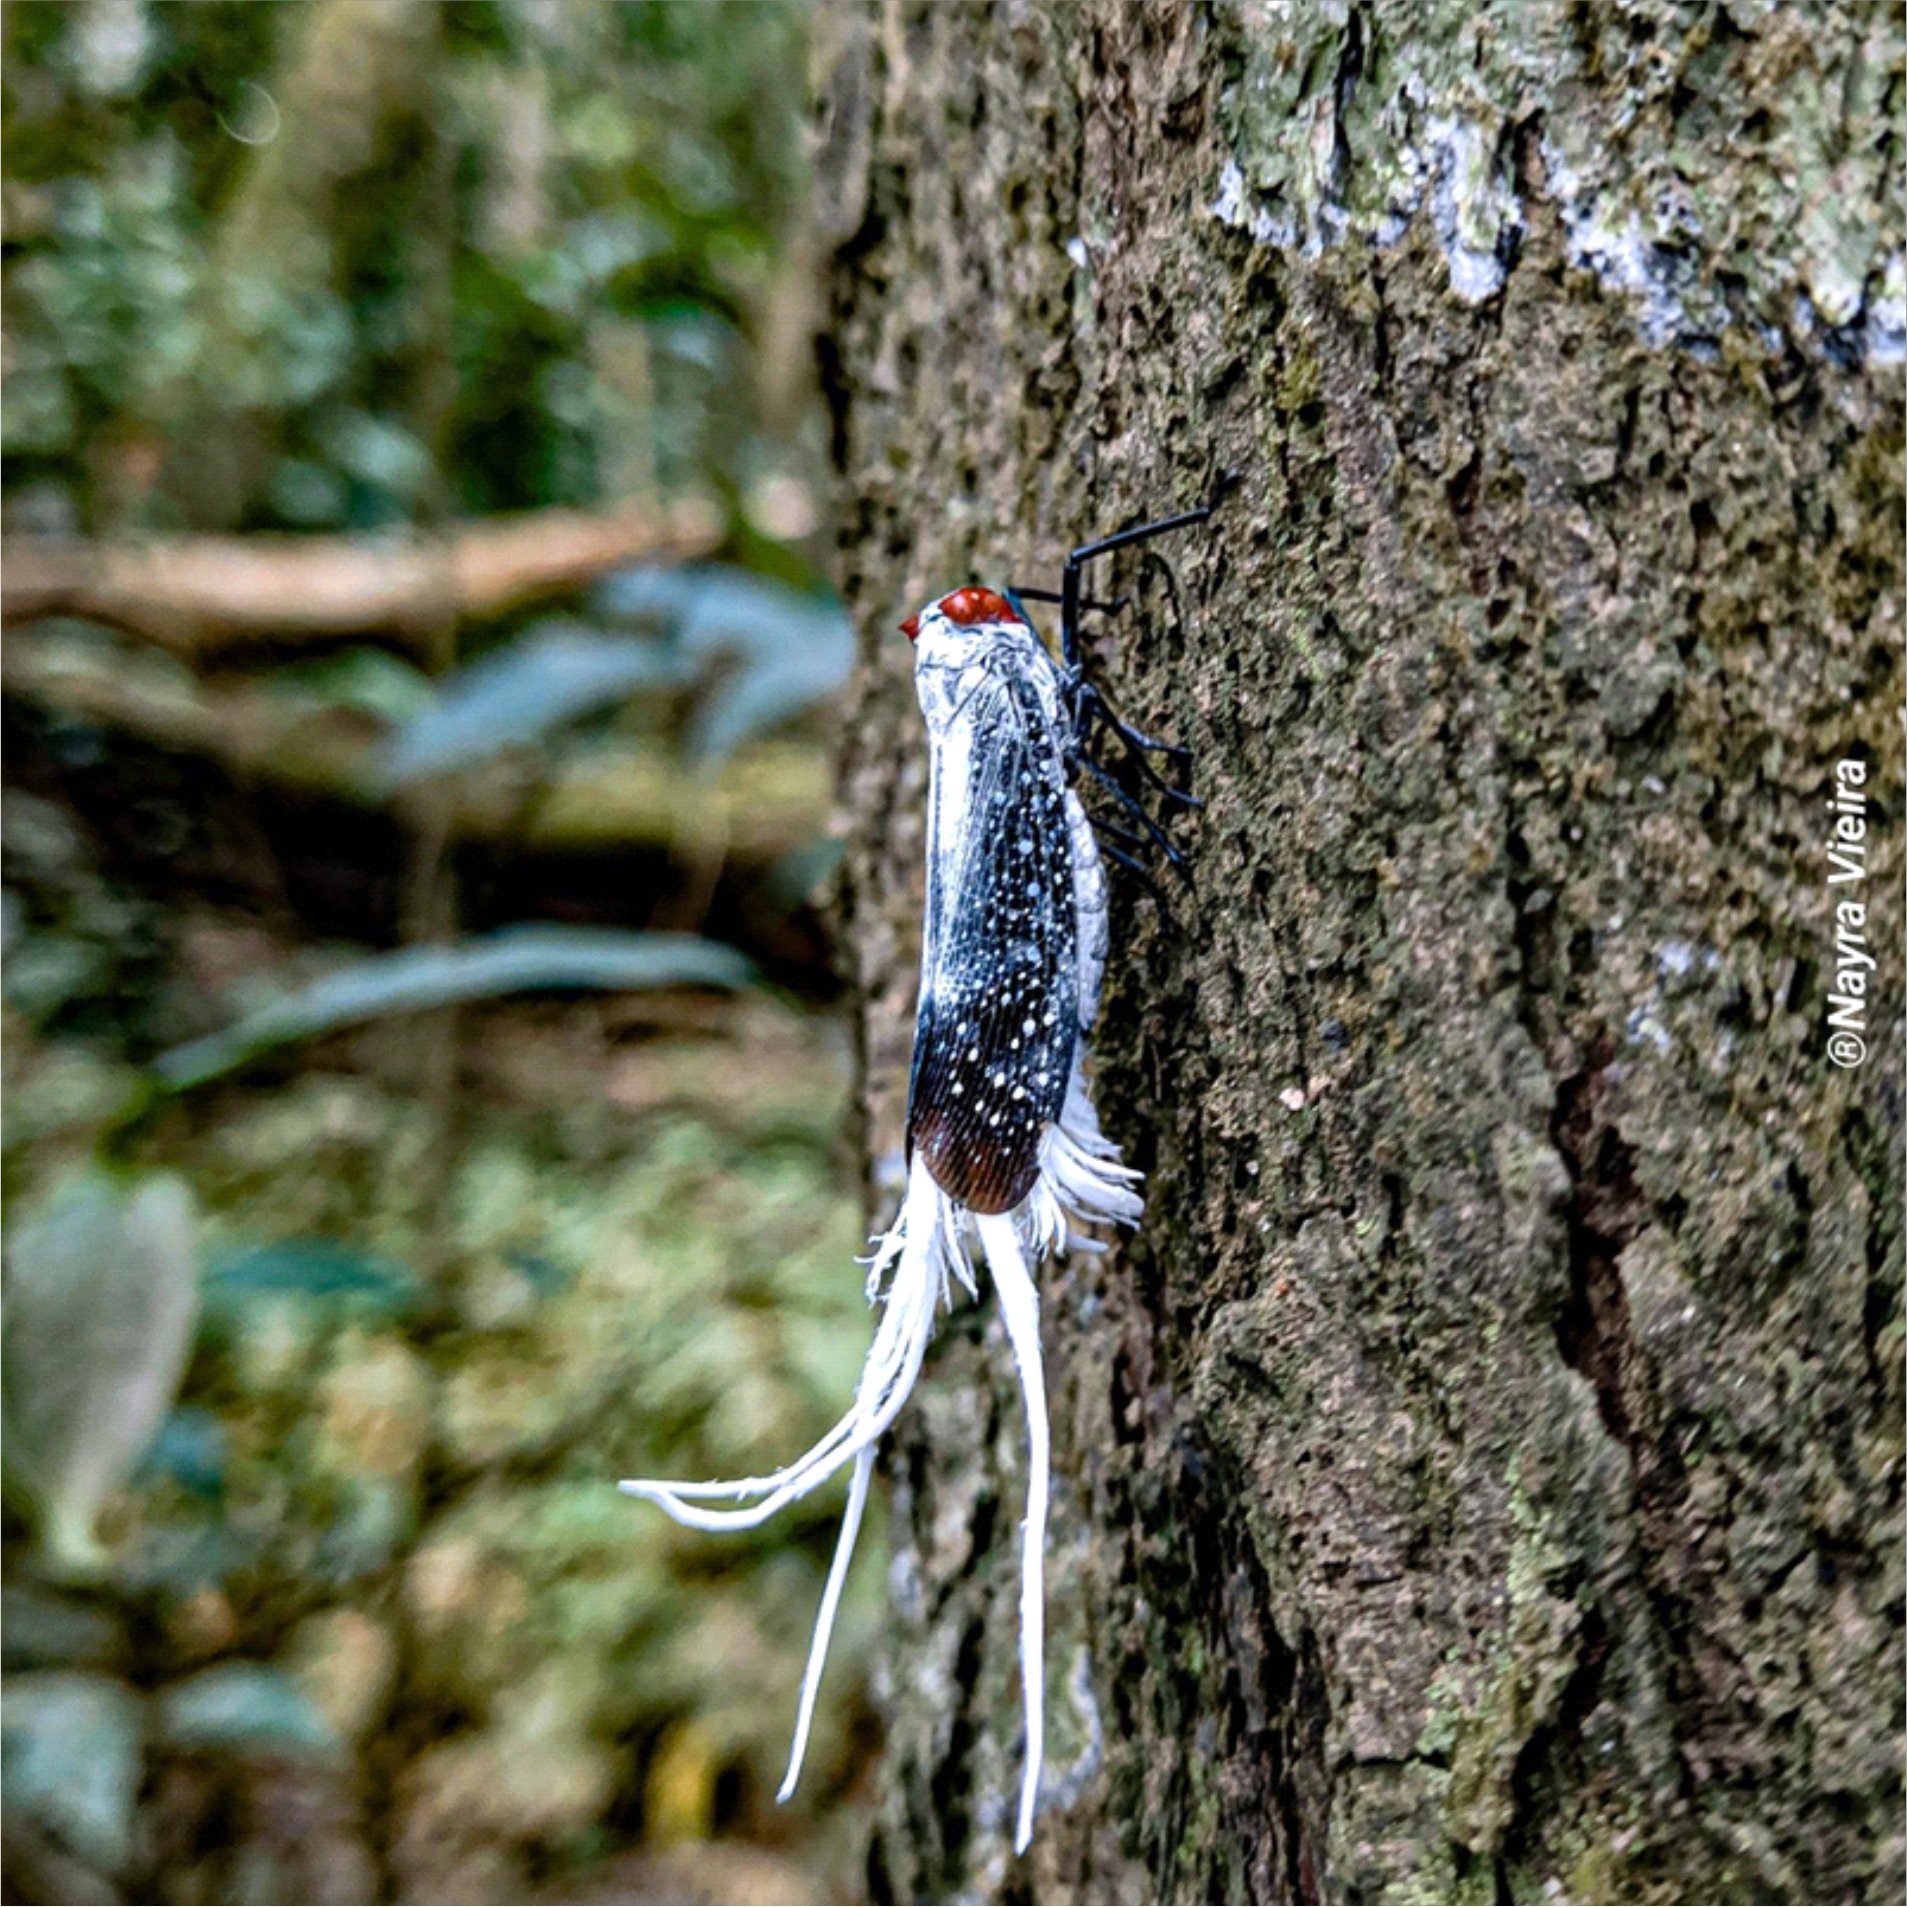 Lystra lanata (cigarra-rabo-de-galo) se alimentando da seiva da árvore Simarouba amara (marupá), árvore comum da região amazônica. | Autora: Nayra Quetlen Avinte Vieira